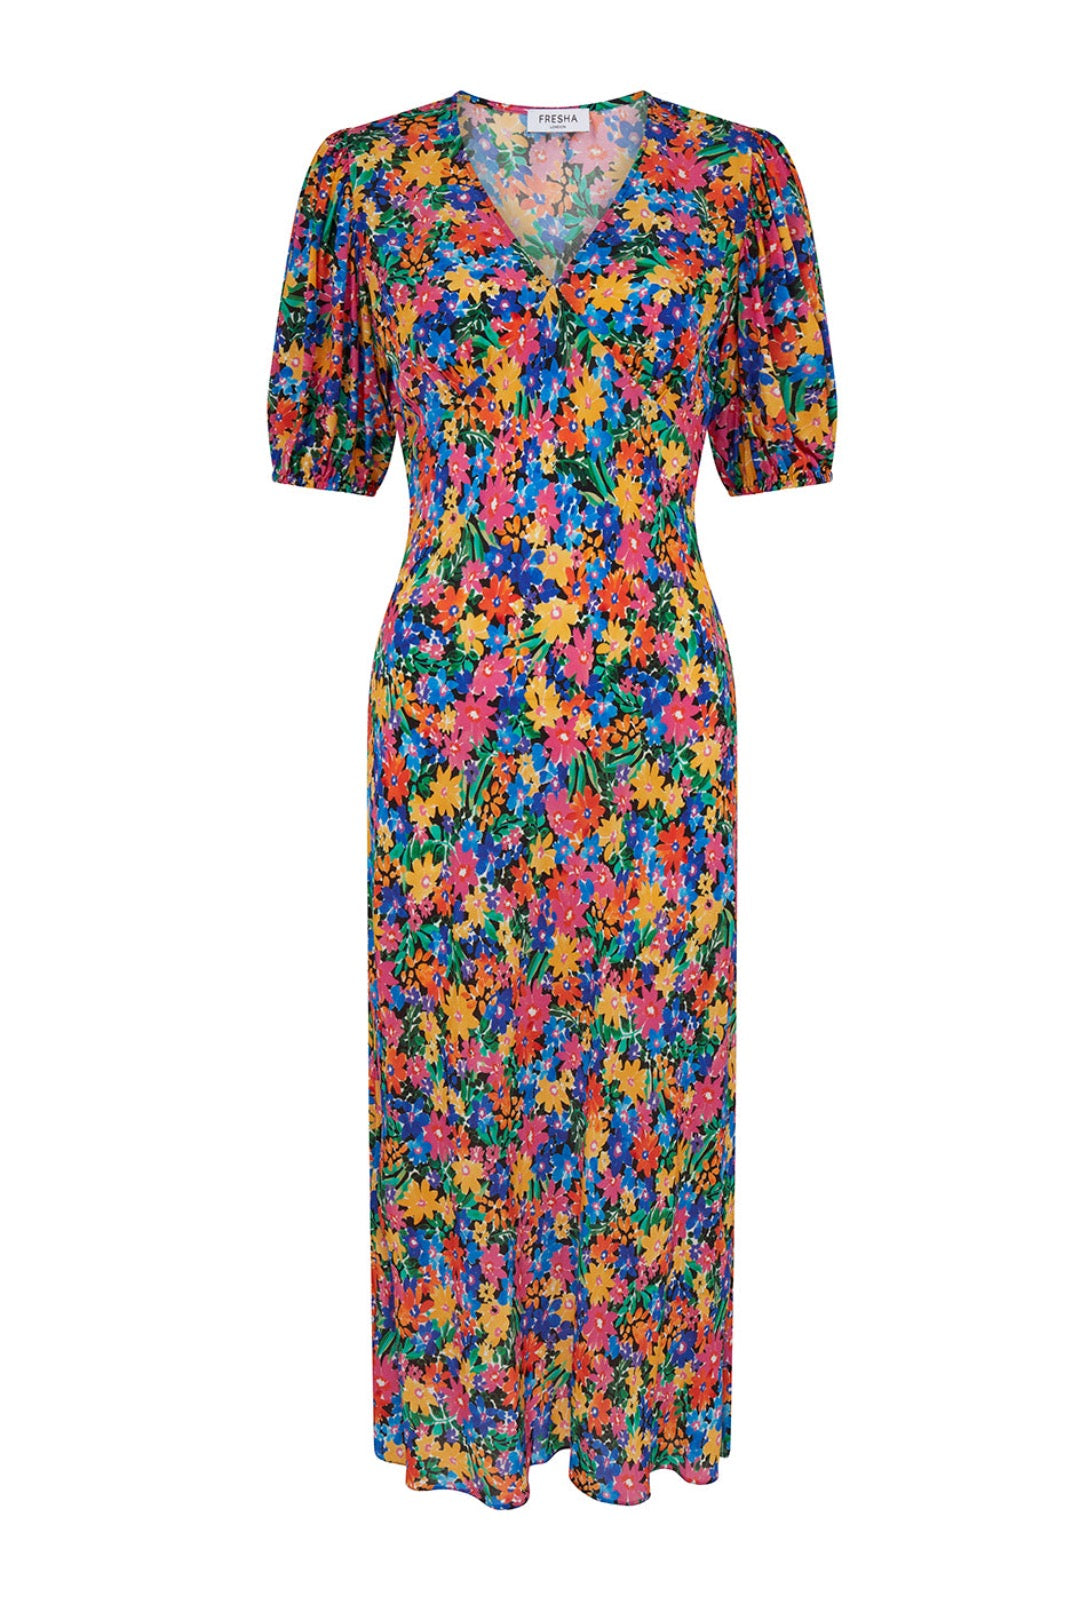 Fresha London Women's Sienna Dress Bloom In Multi